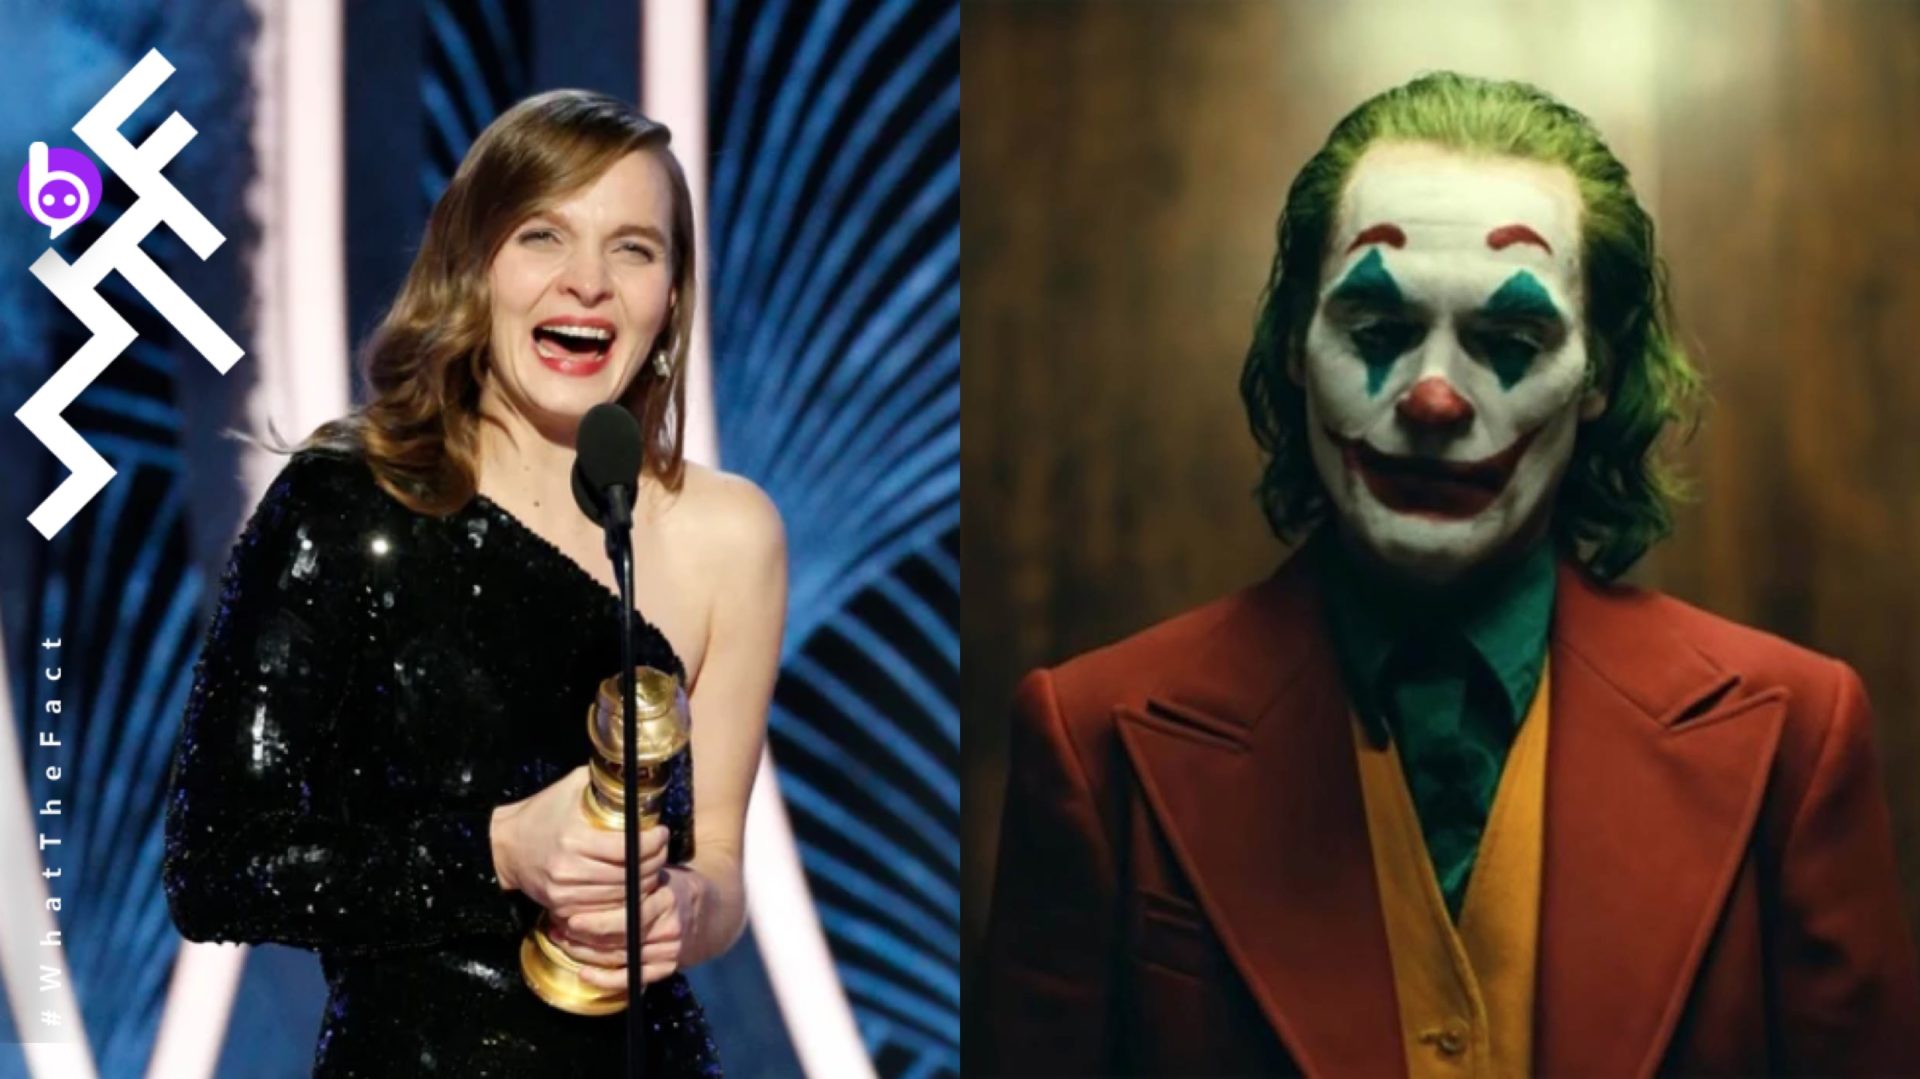 คว้าชัยในลูกโลกทองคำ !! Hildur Guðnadóttir เป็นนักประพันธ์เพลงหญิงคนแรกที่ได้รับรางวัลในสาขาดนตรีประกอบภาพยนตร์ยอดเยี่ยม จากภาพยนตร์เรื่อง “Joker”